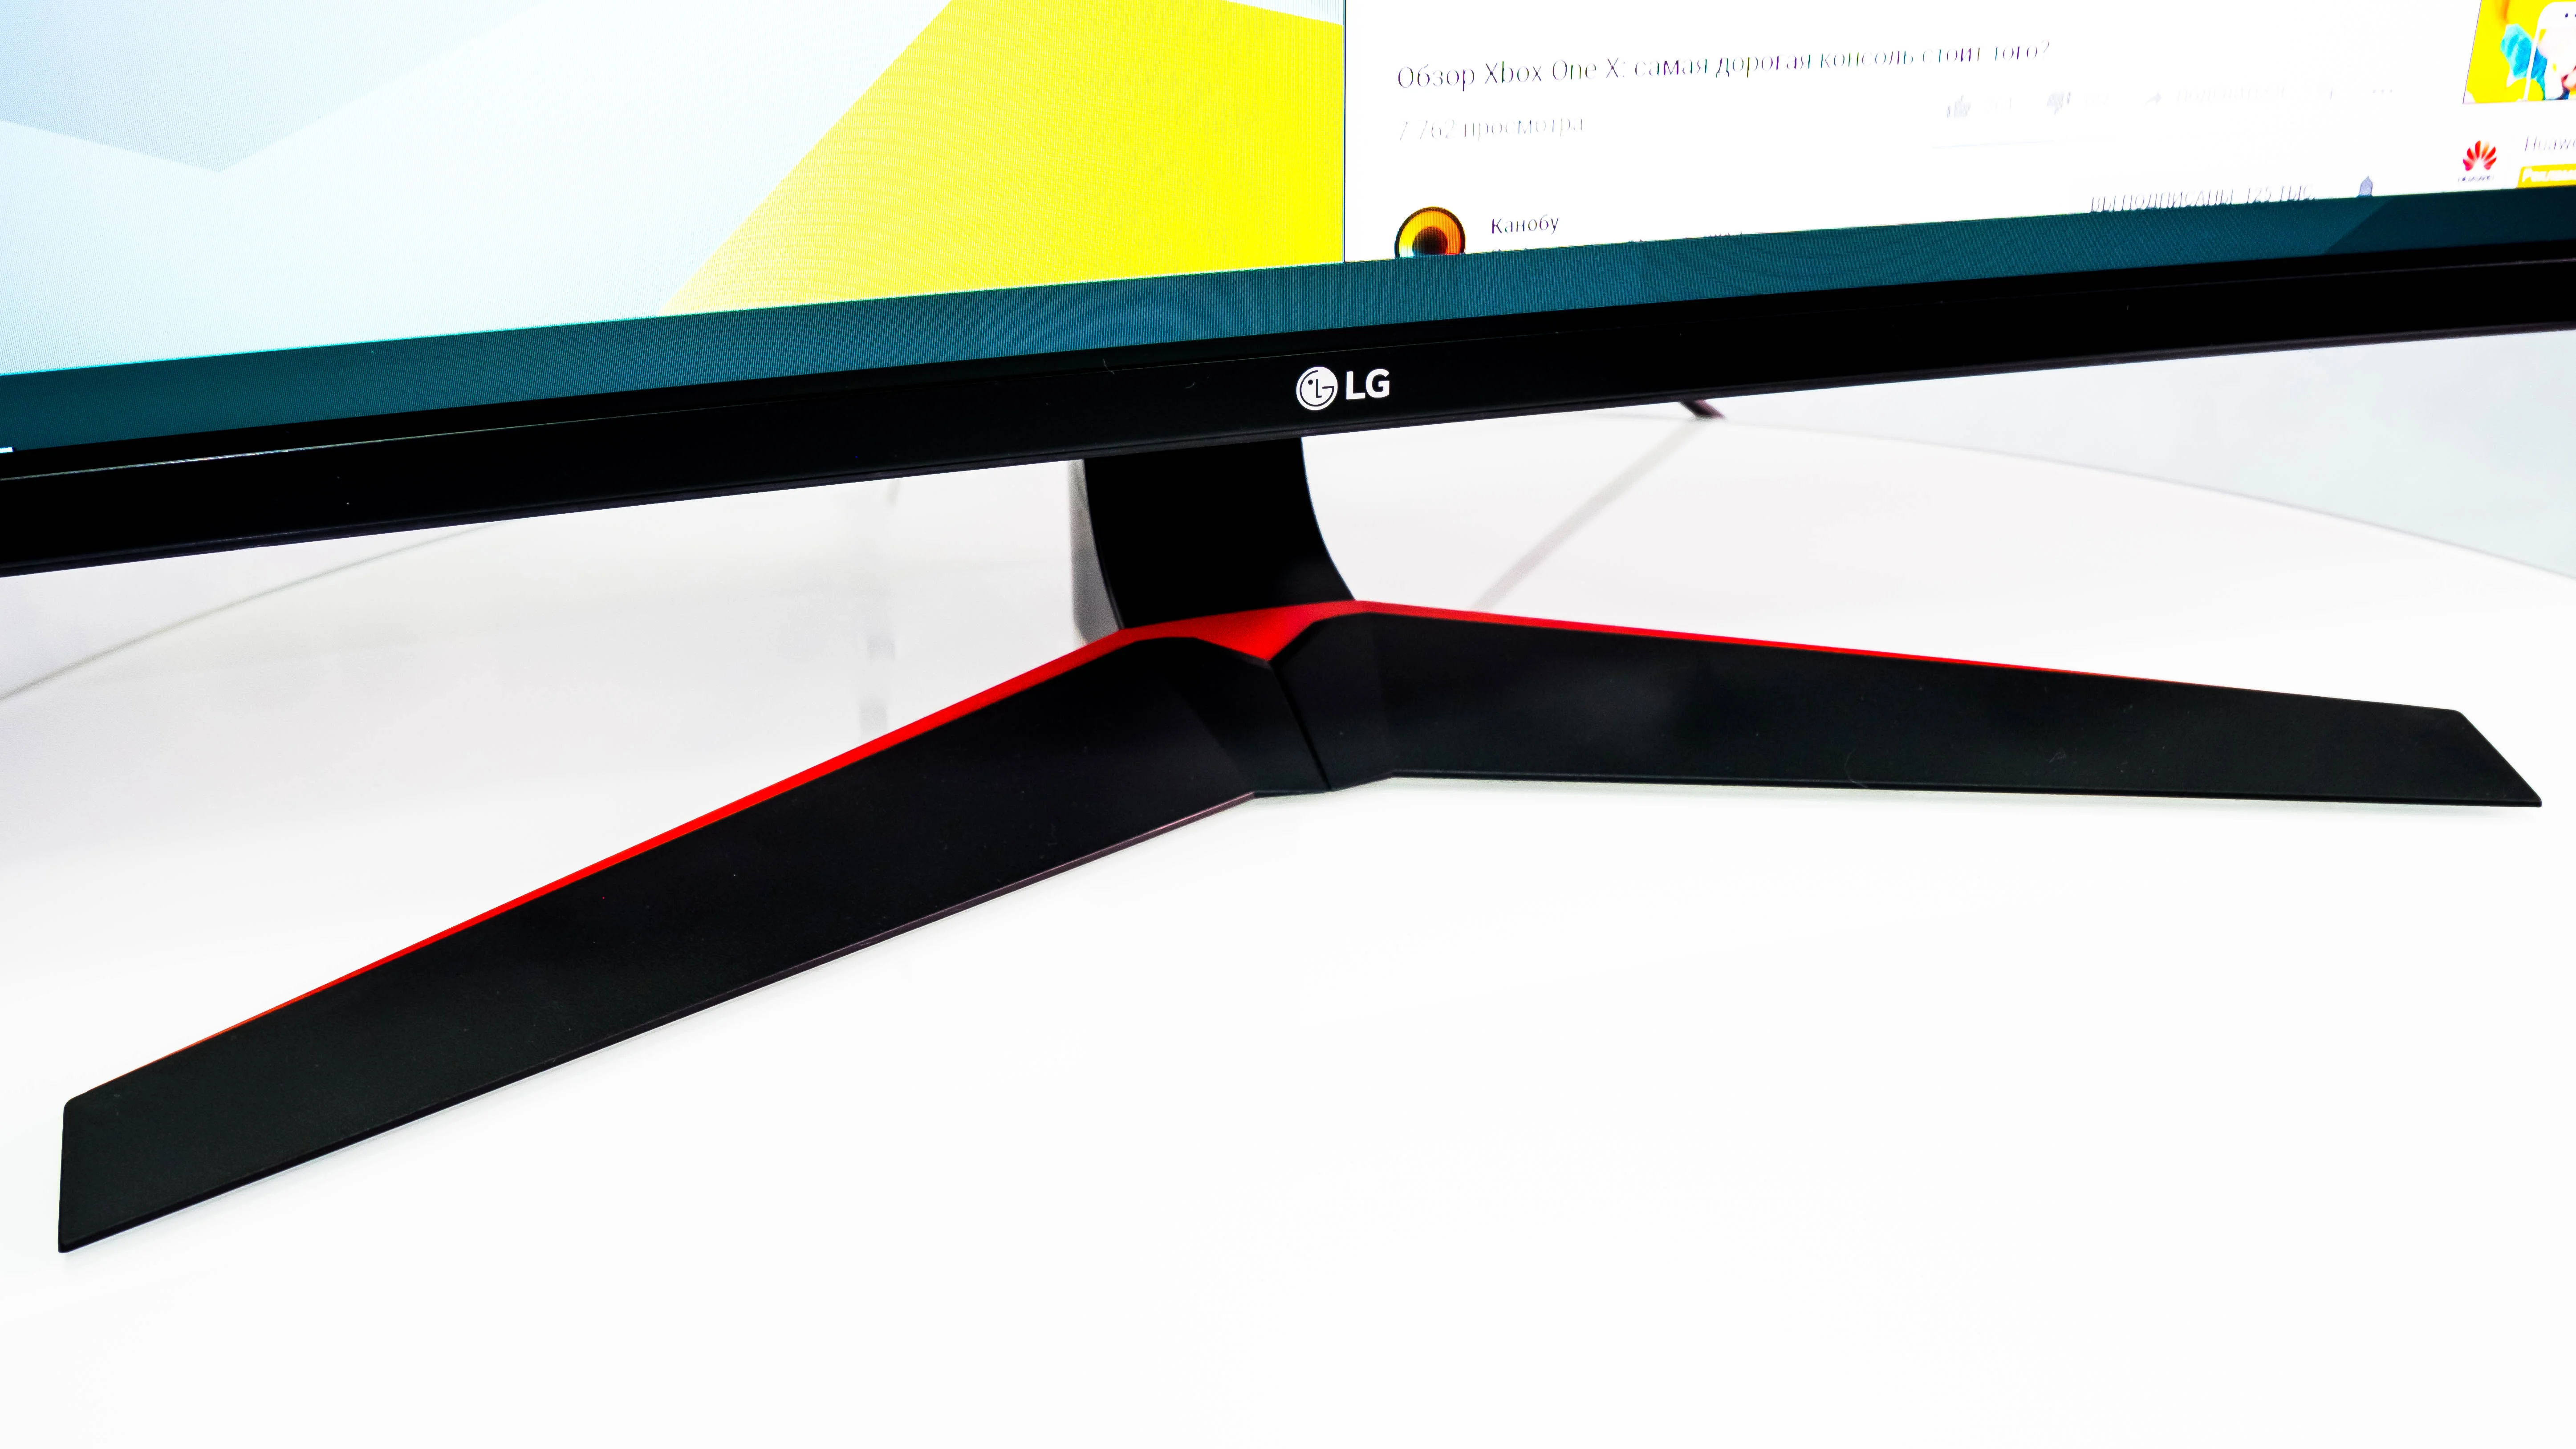 Пора расширять границы: обзор монитора LG Curved Ultrawide - фото 2